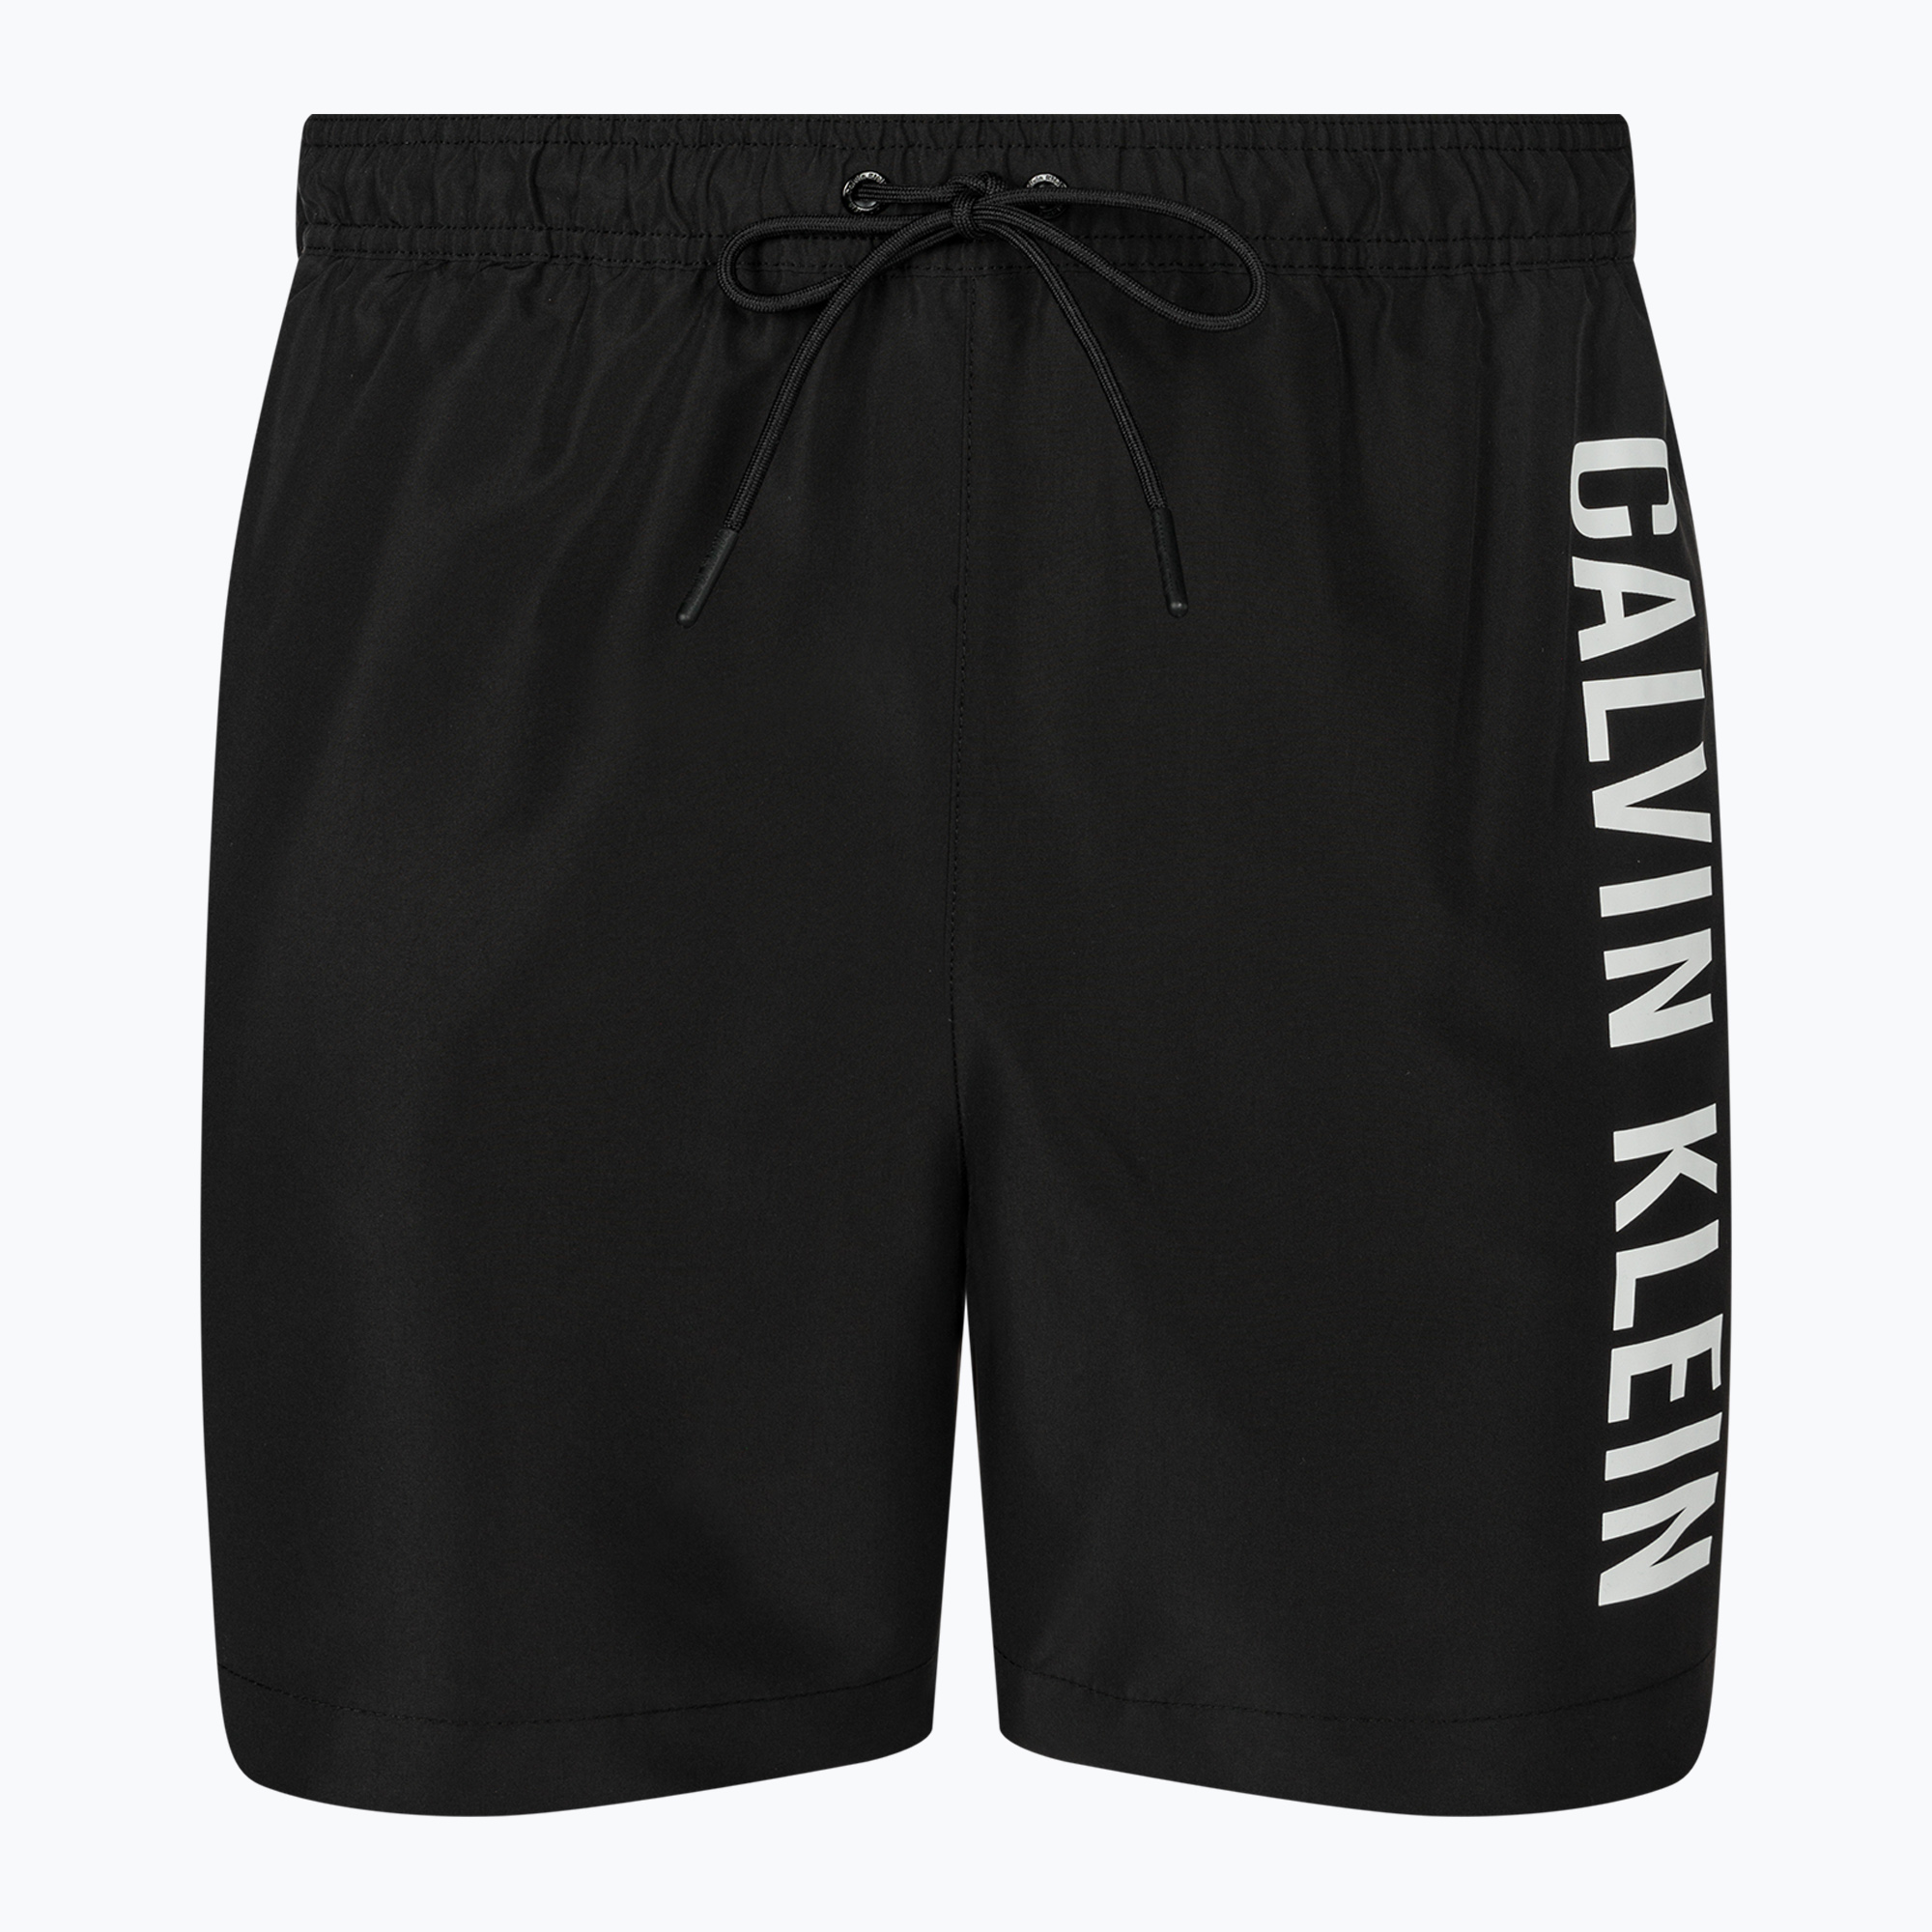 Pánske plavecké šortky Calvin Klein Medium Drawstring black